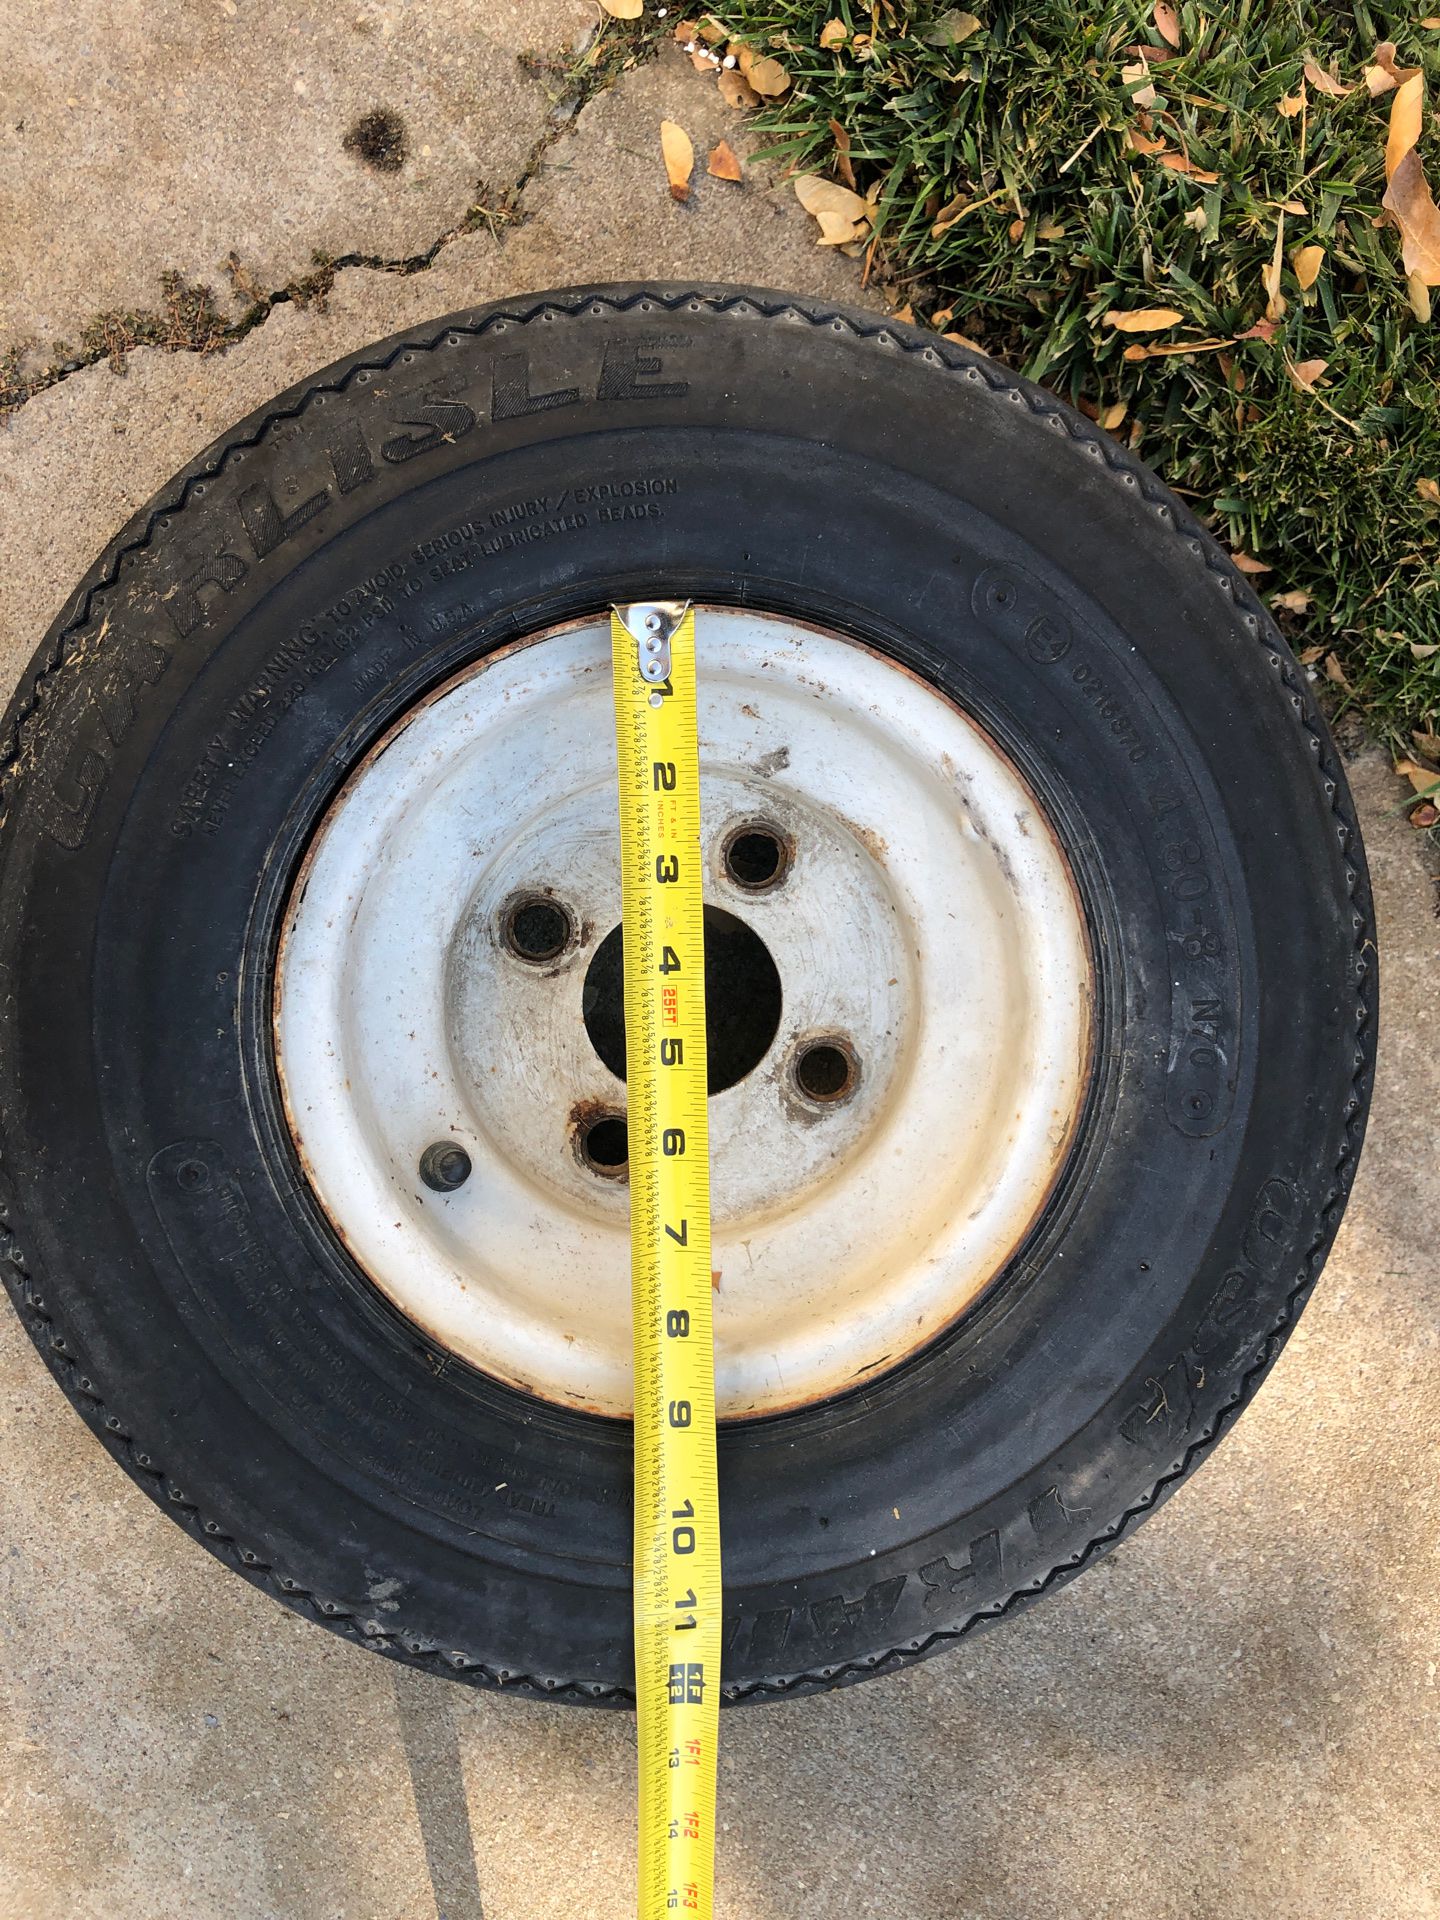 Trailer tire 9” rim